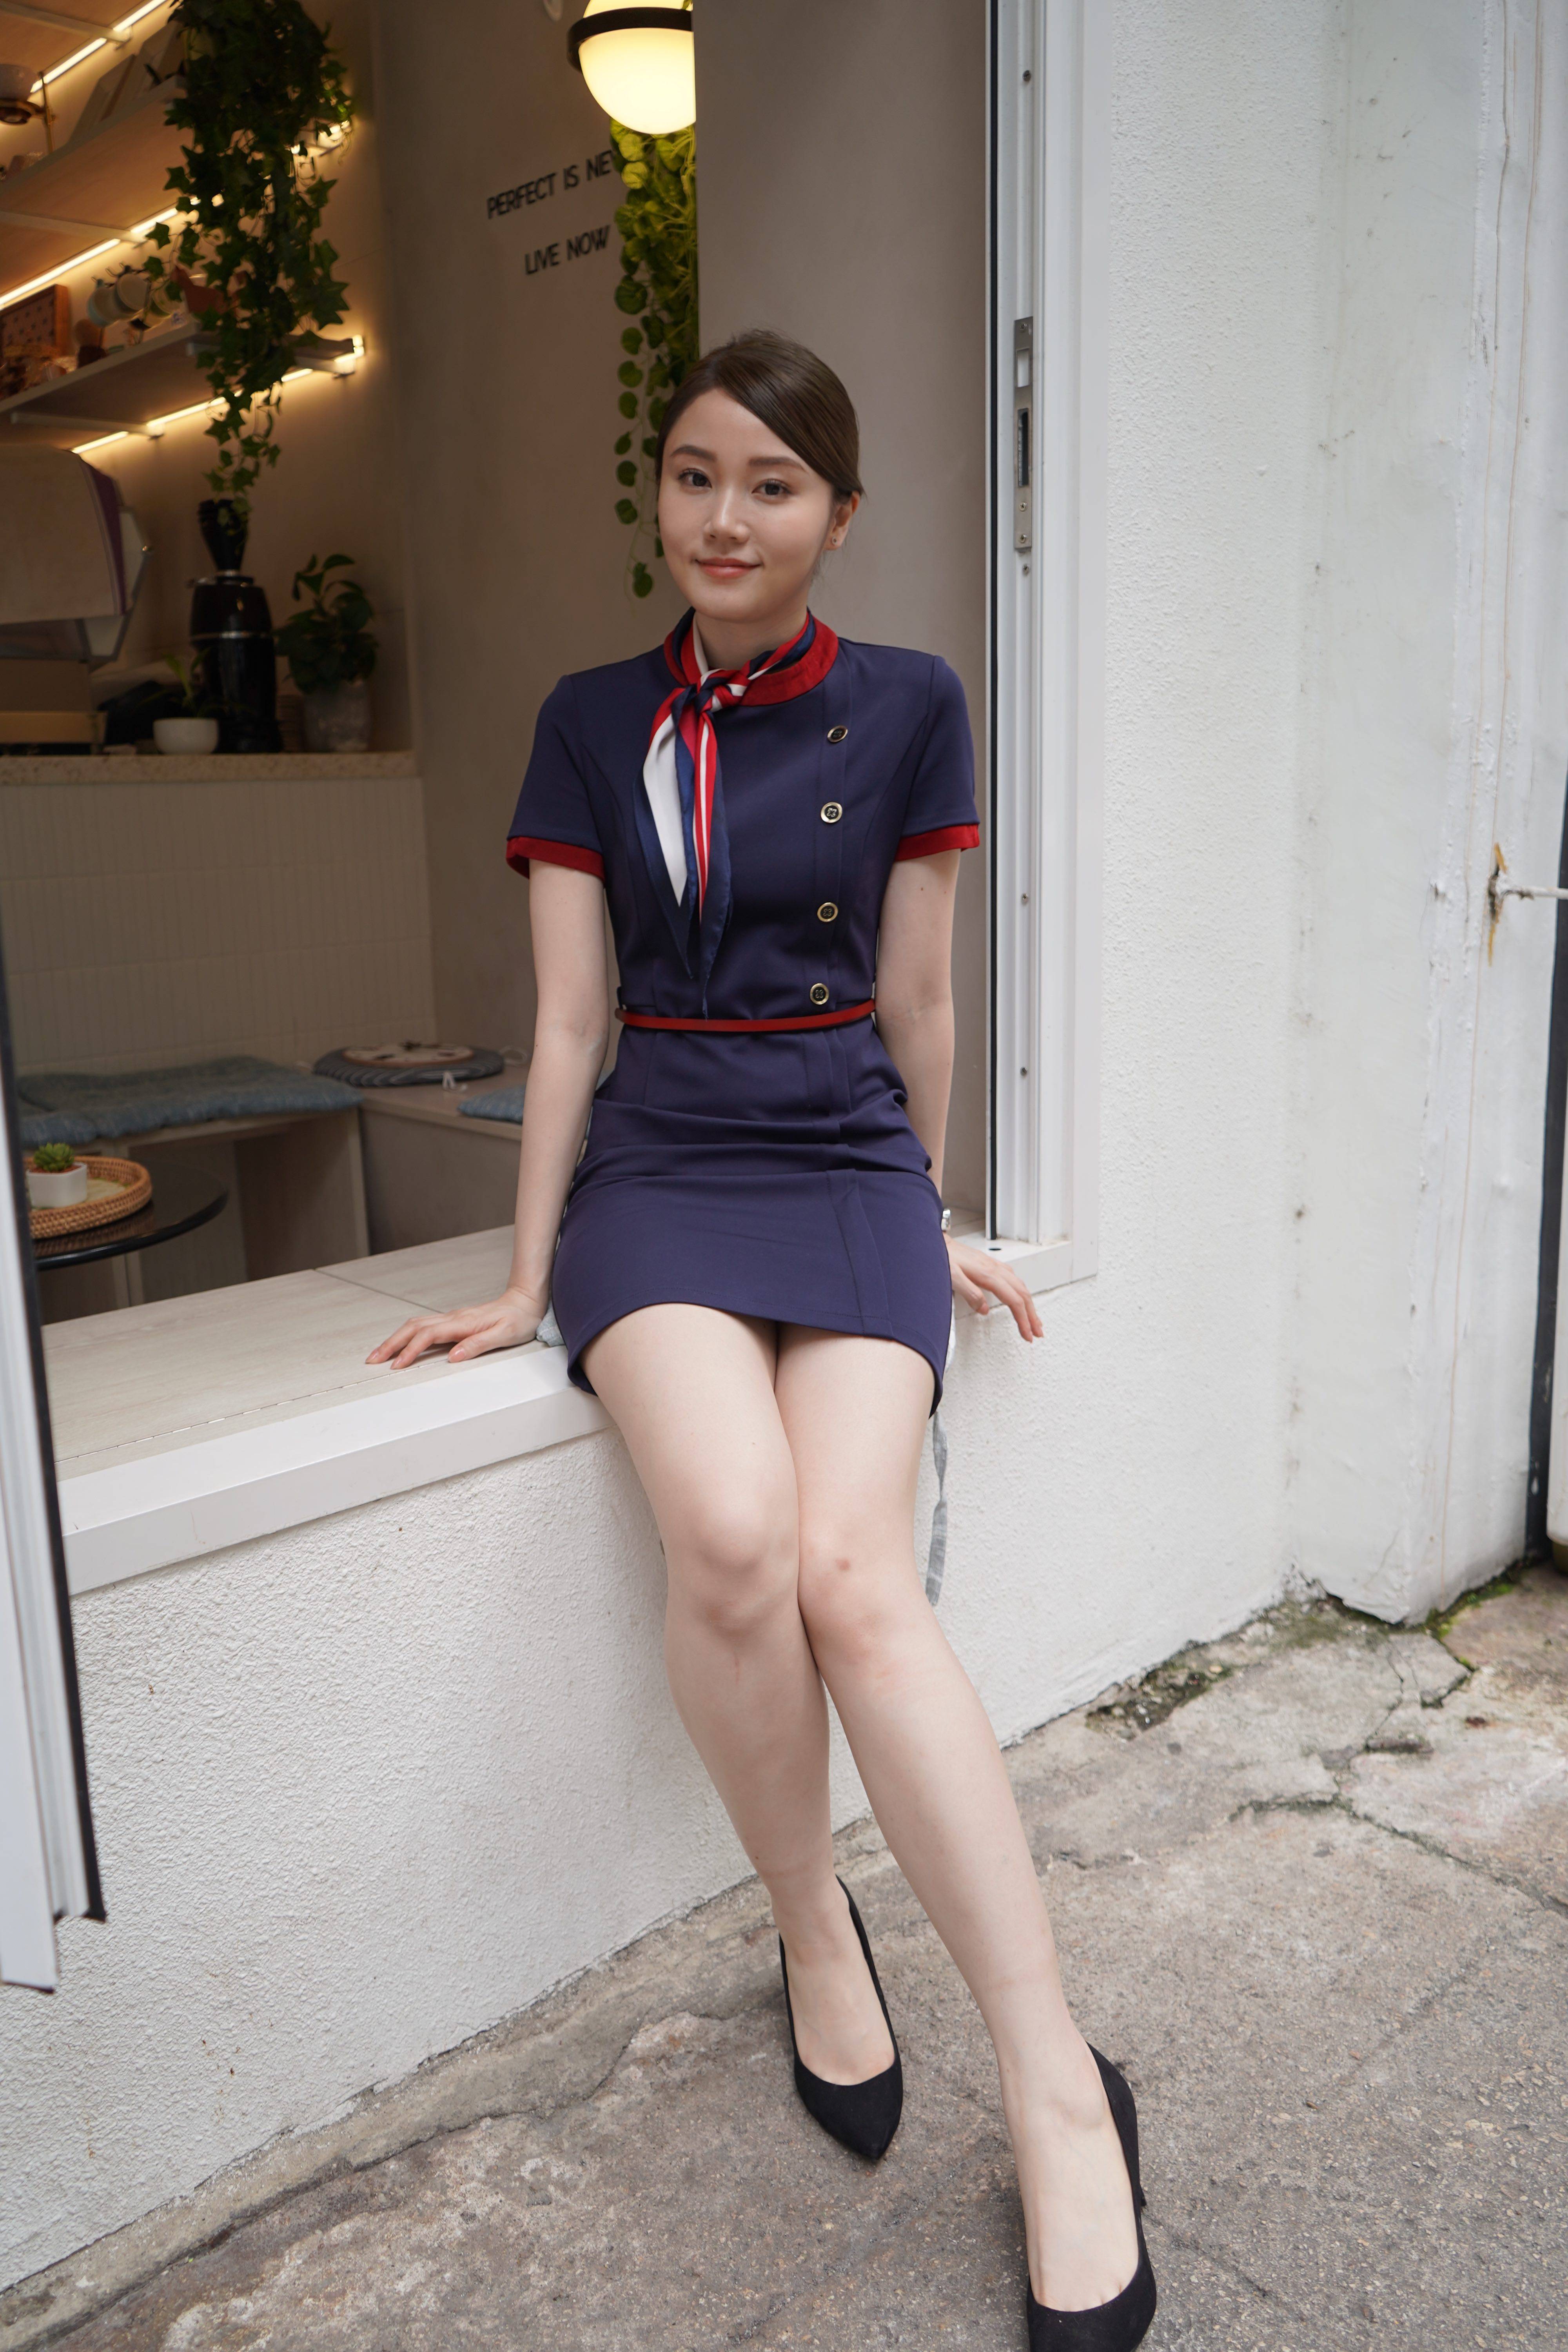 转角浣纱街 Yanny Yanny陈颖欣在《转角浣纱街》饰演空姐。